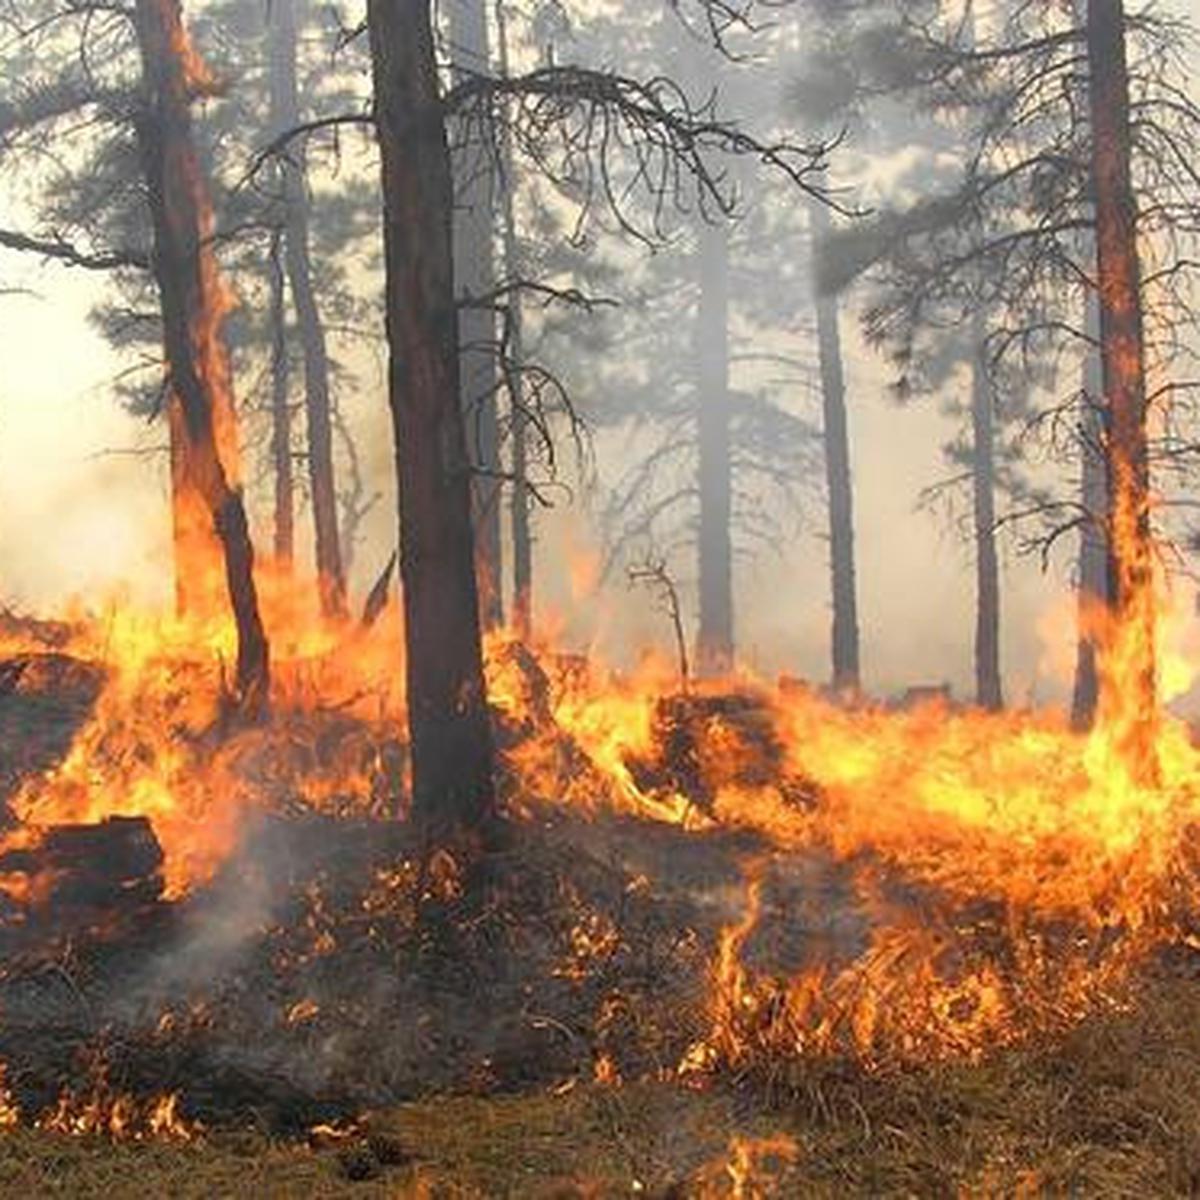 Apakah penyebab kebakaran hutan sesuai informasi yang kamu dapat dari bacaan diatas